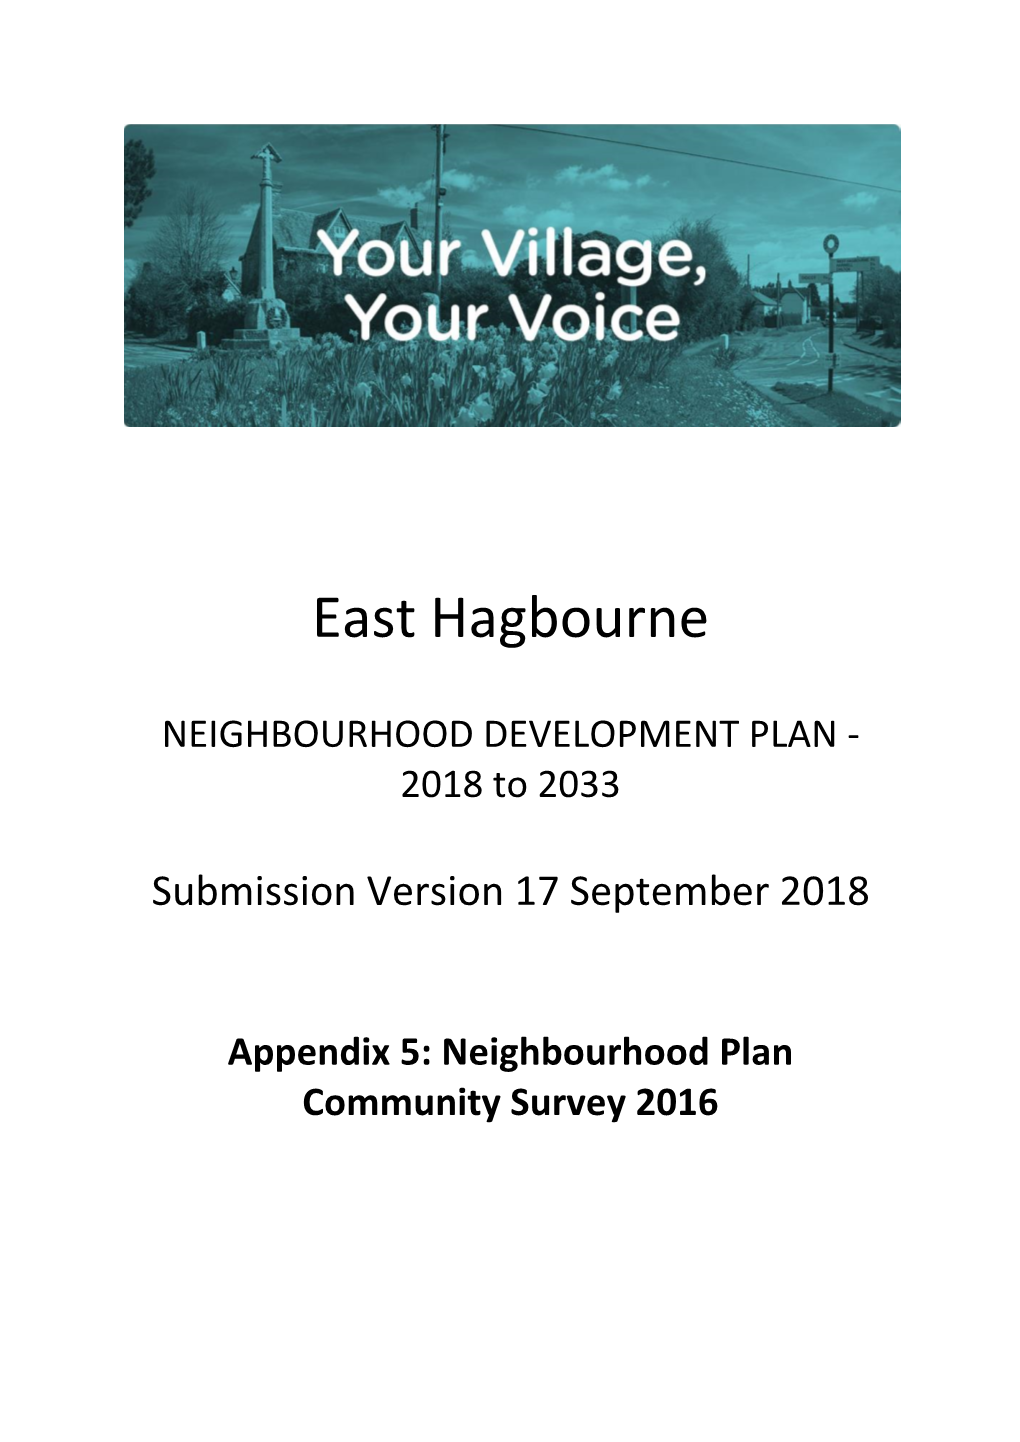 EHNP Appendix 5 Community Survey